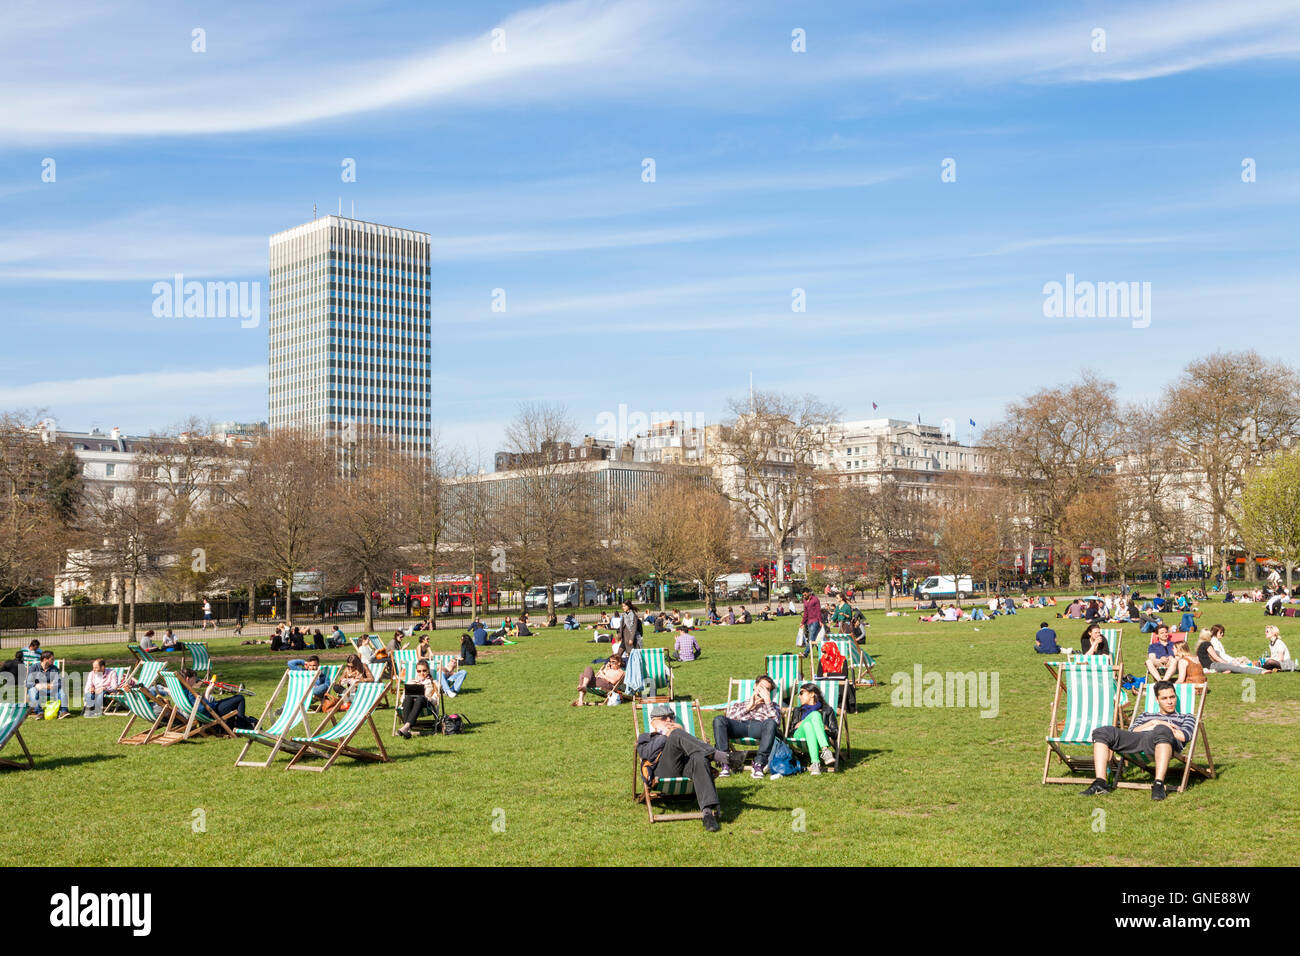 Personnes assises sur des chaises longues à Hyde Park lors d'une journée ensoleillée au printemps, Londres, Angleterre, Royaume-Uni Banque D'Images